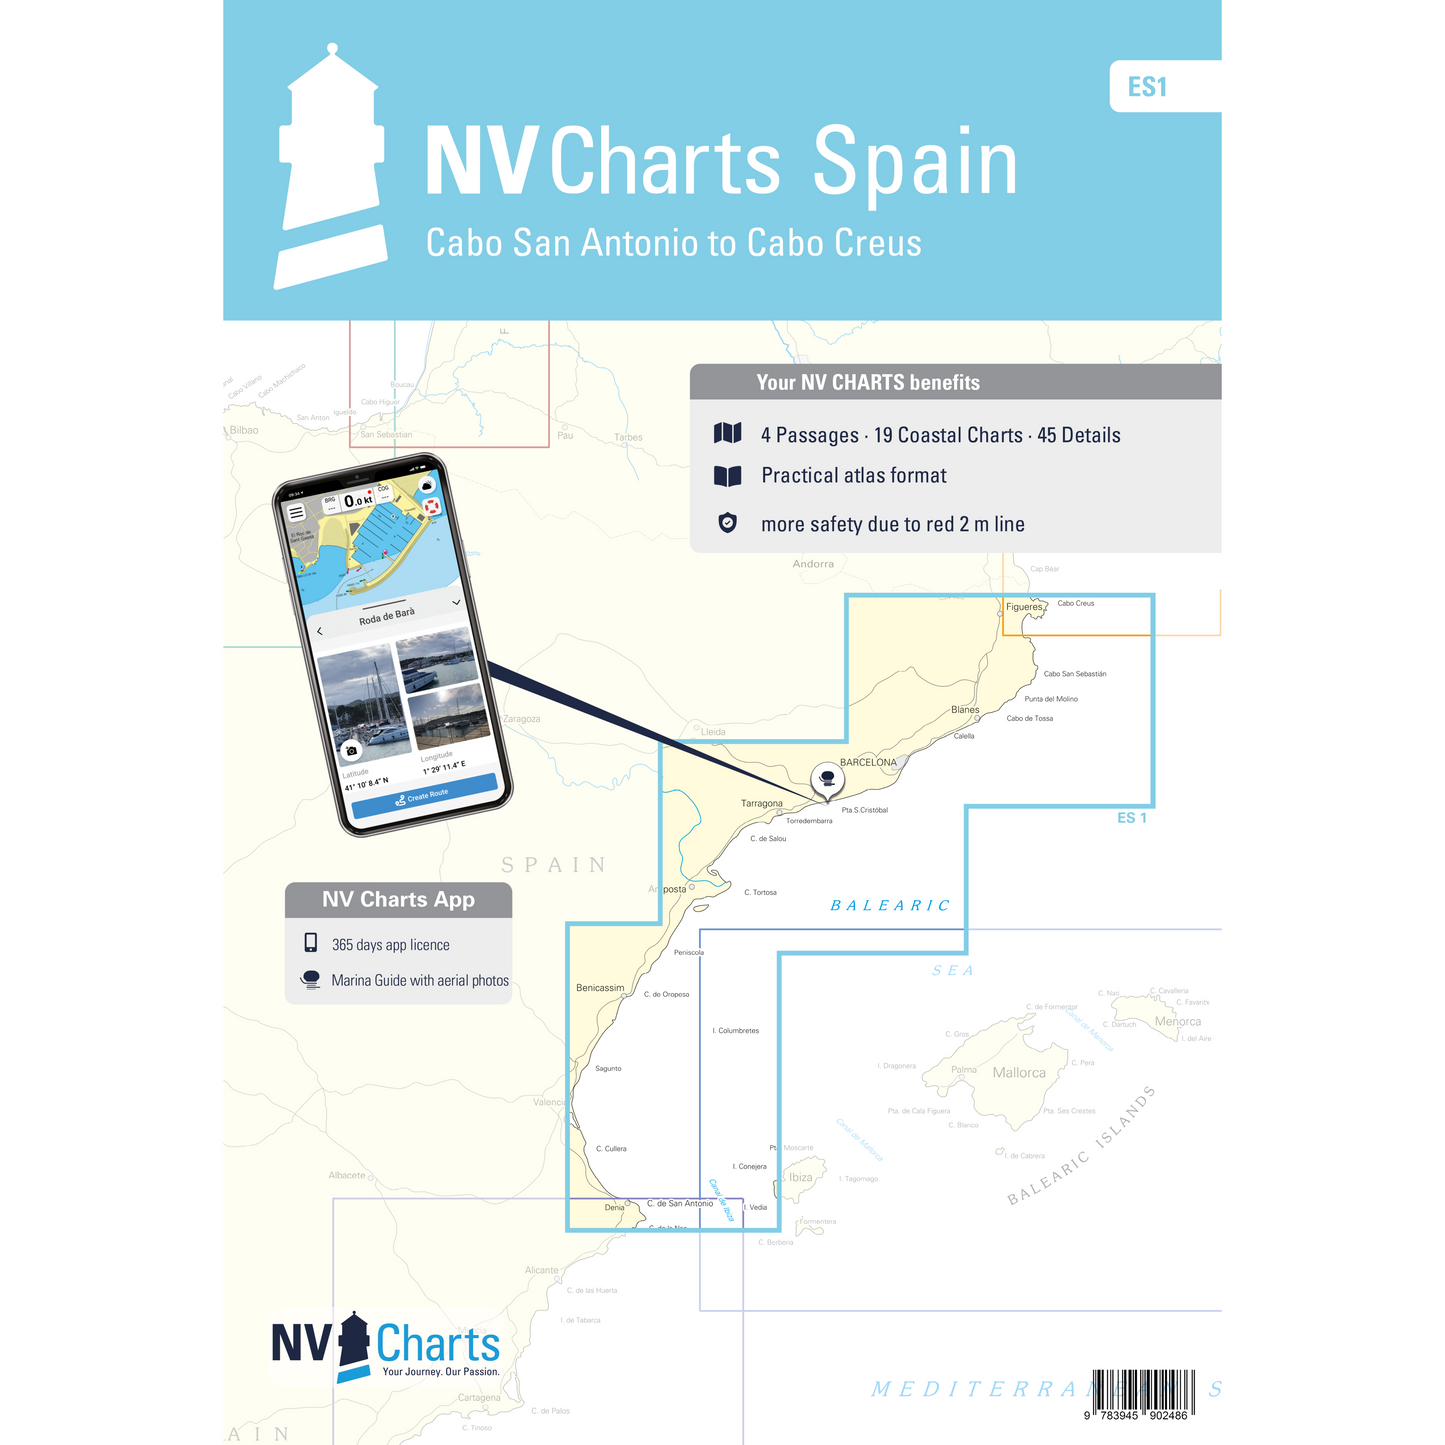 Carte NV Charts Espagne ES1 - Cabo Creus to Cabo San Antonio